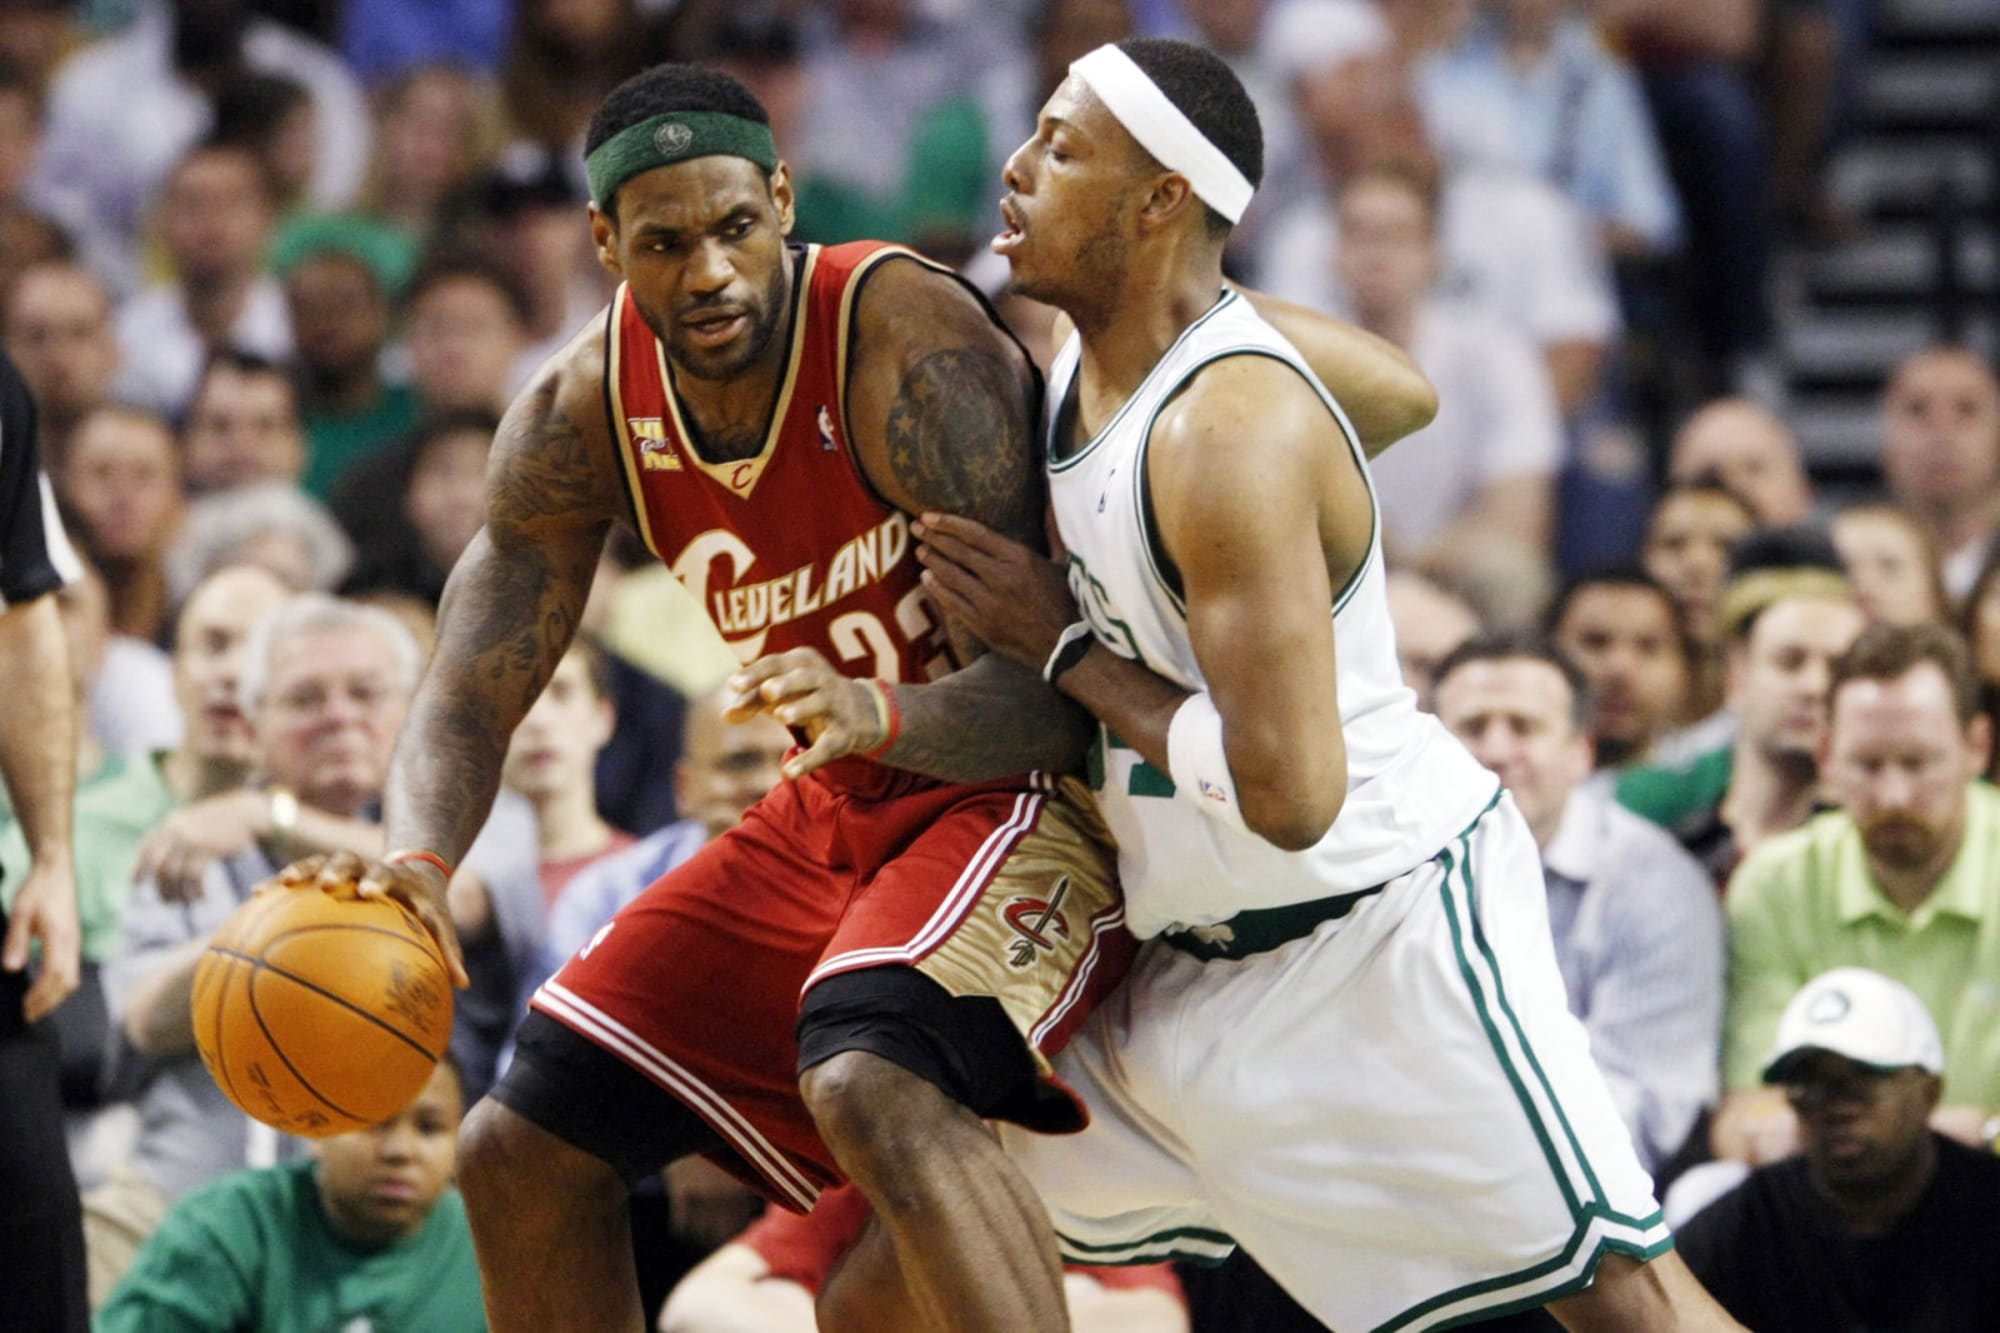 Boston Celtics Rewatch Part 1 Paul Pierce vs LeBron James duel in 2008